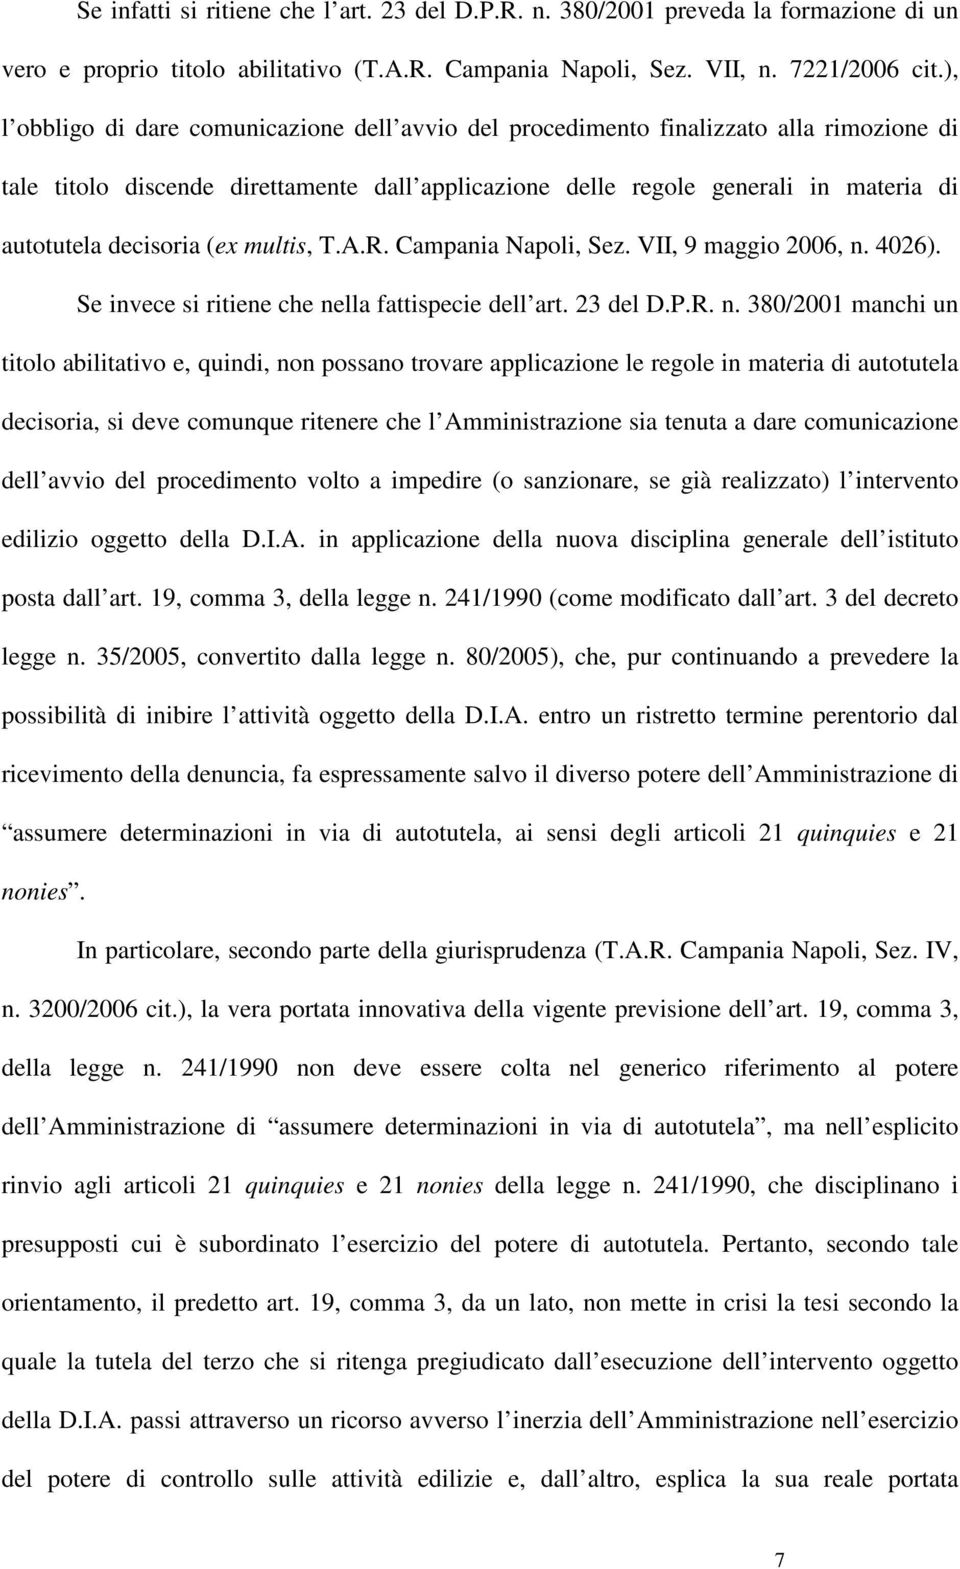 decisoria (ex multis, T.A.R. Campania Napoli, Sez. VII, 9 maggio 2006, n.